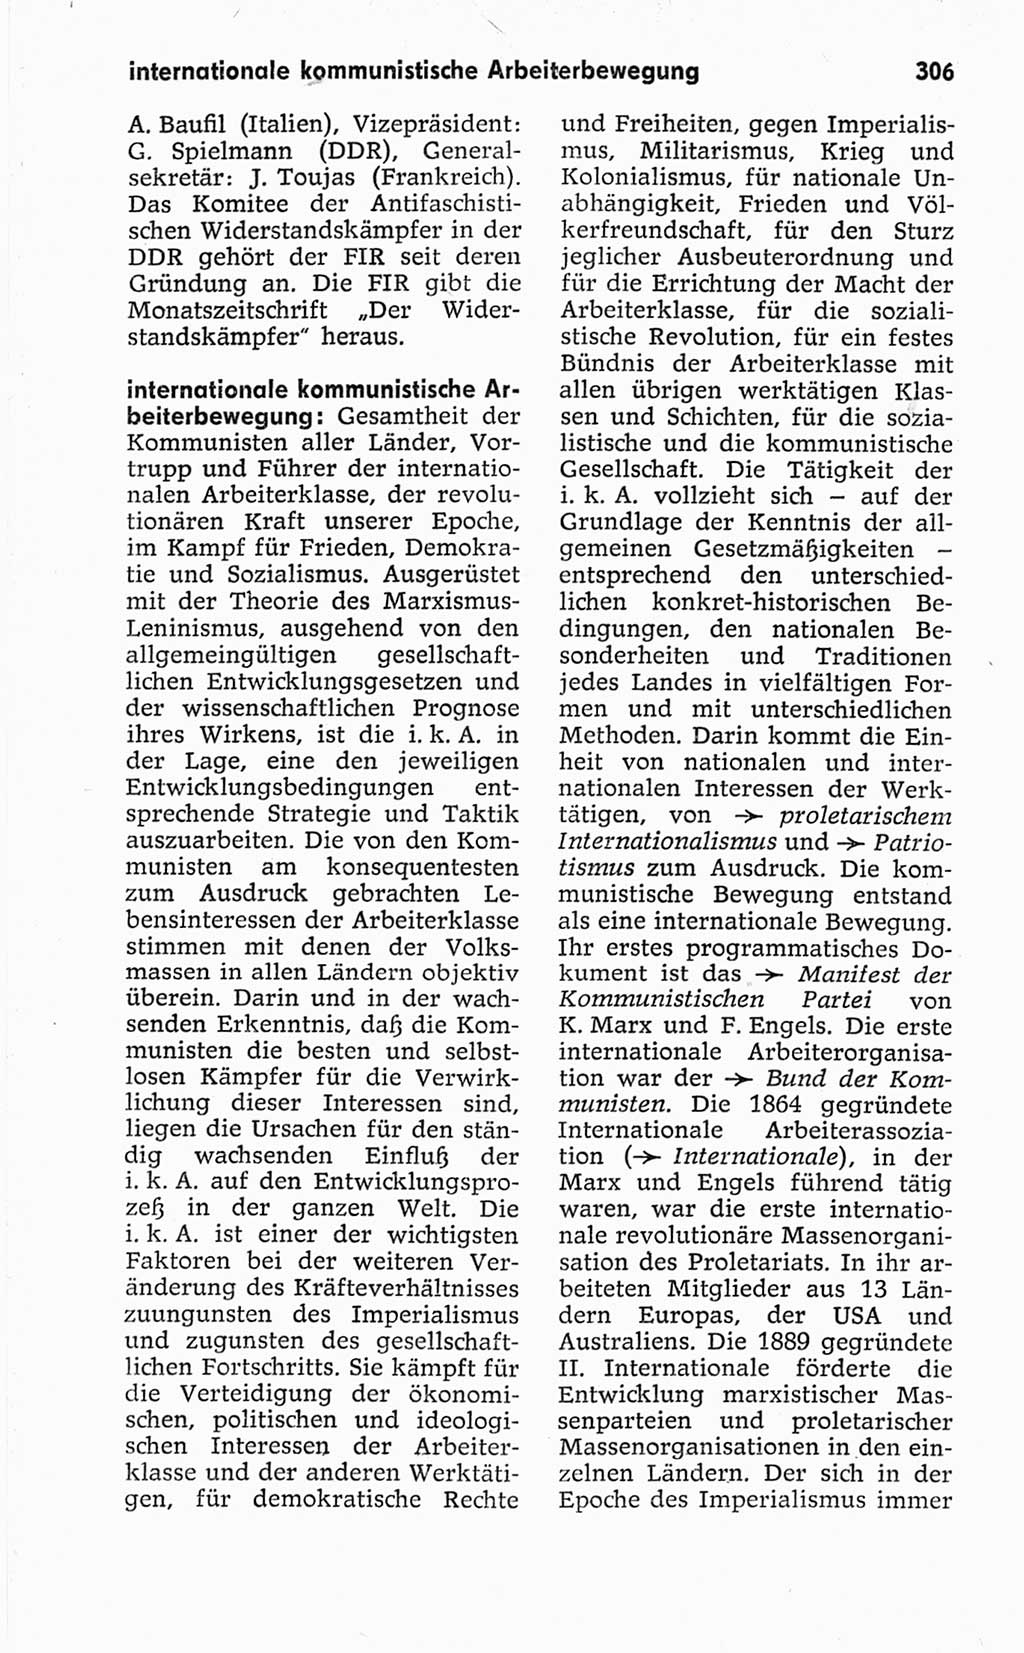 Kleines politisches Wörterbuch [Deutsche Demokratische Republik (DDR)] 1967, Seite 306 (Kl. pol. Wb. DDR 1967, S. 306)